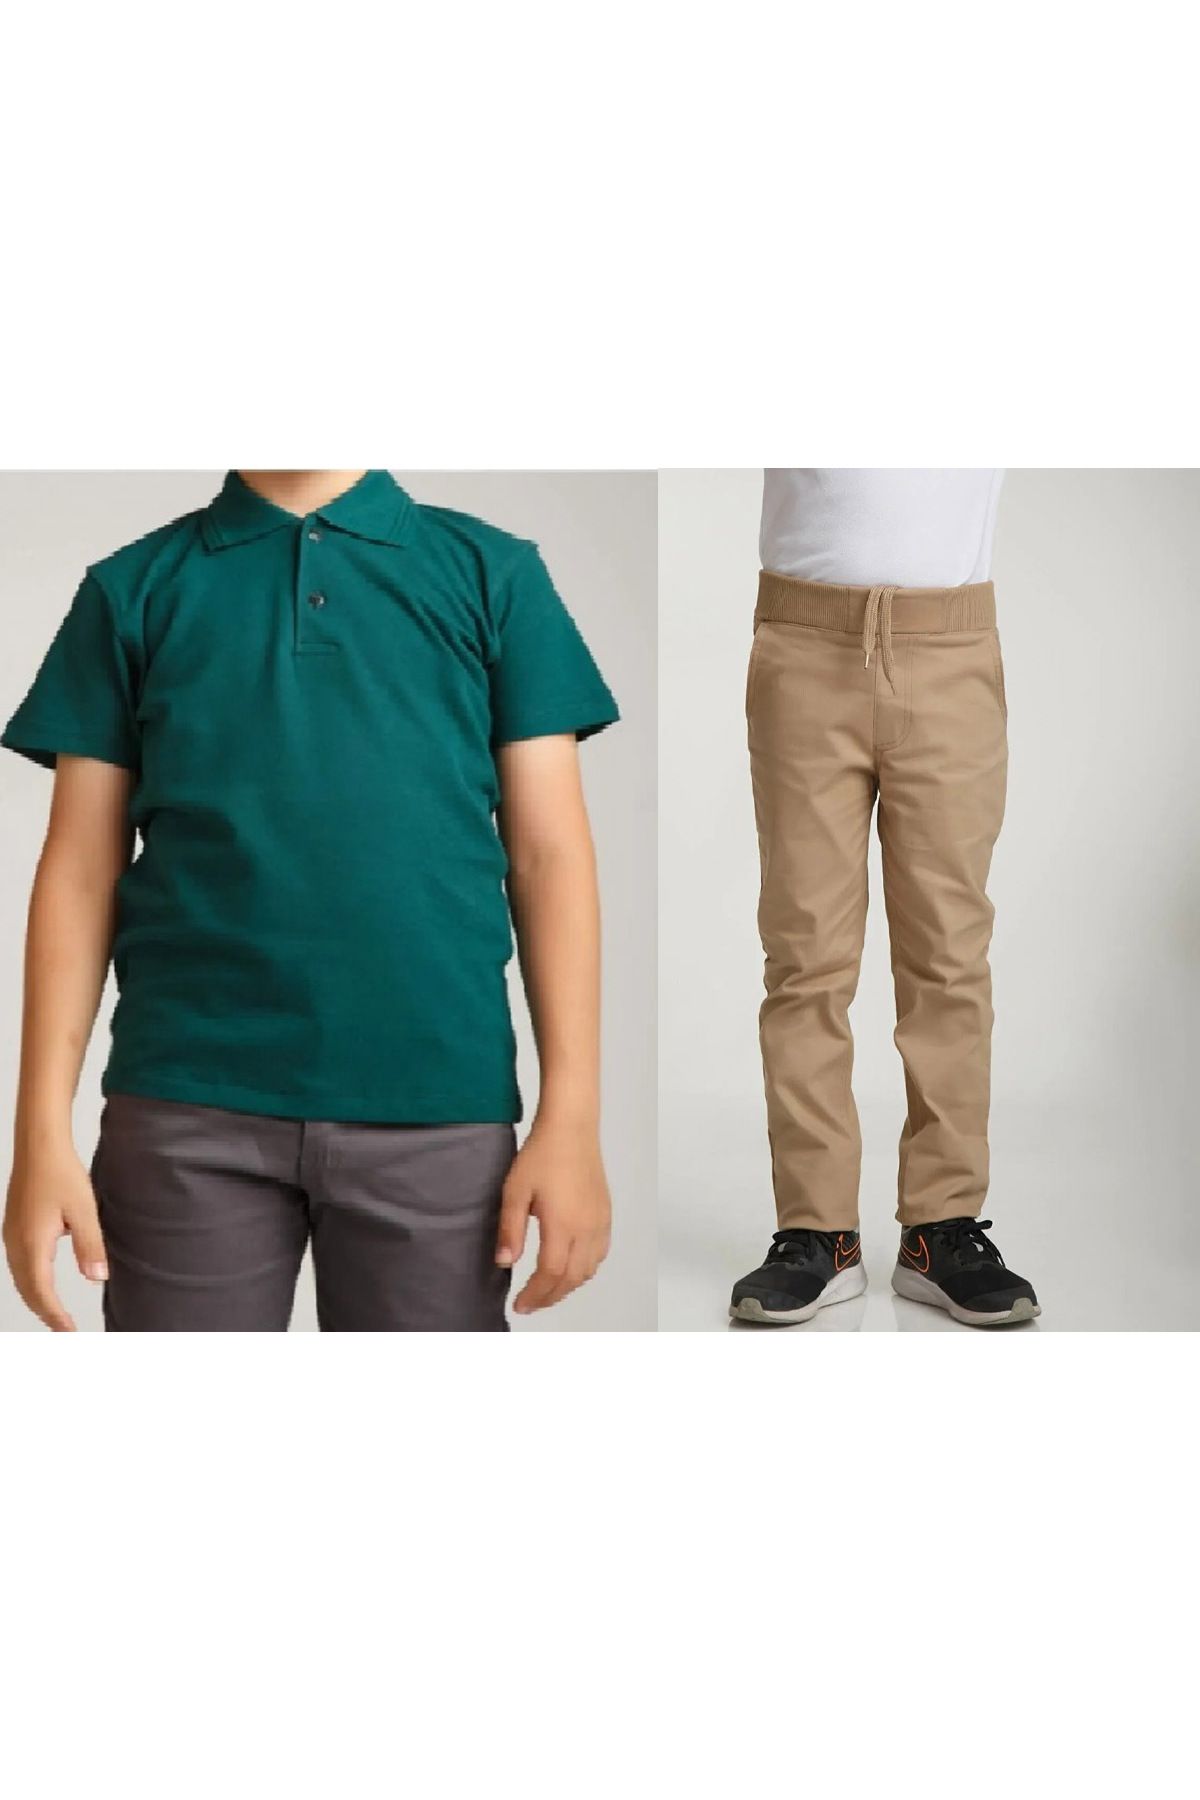 FATELLA Unisex çocuk okul ribana bel pantolon - koyu yeşil kısa kol Polo yaka Tişört İkili takım